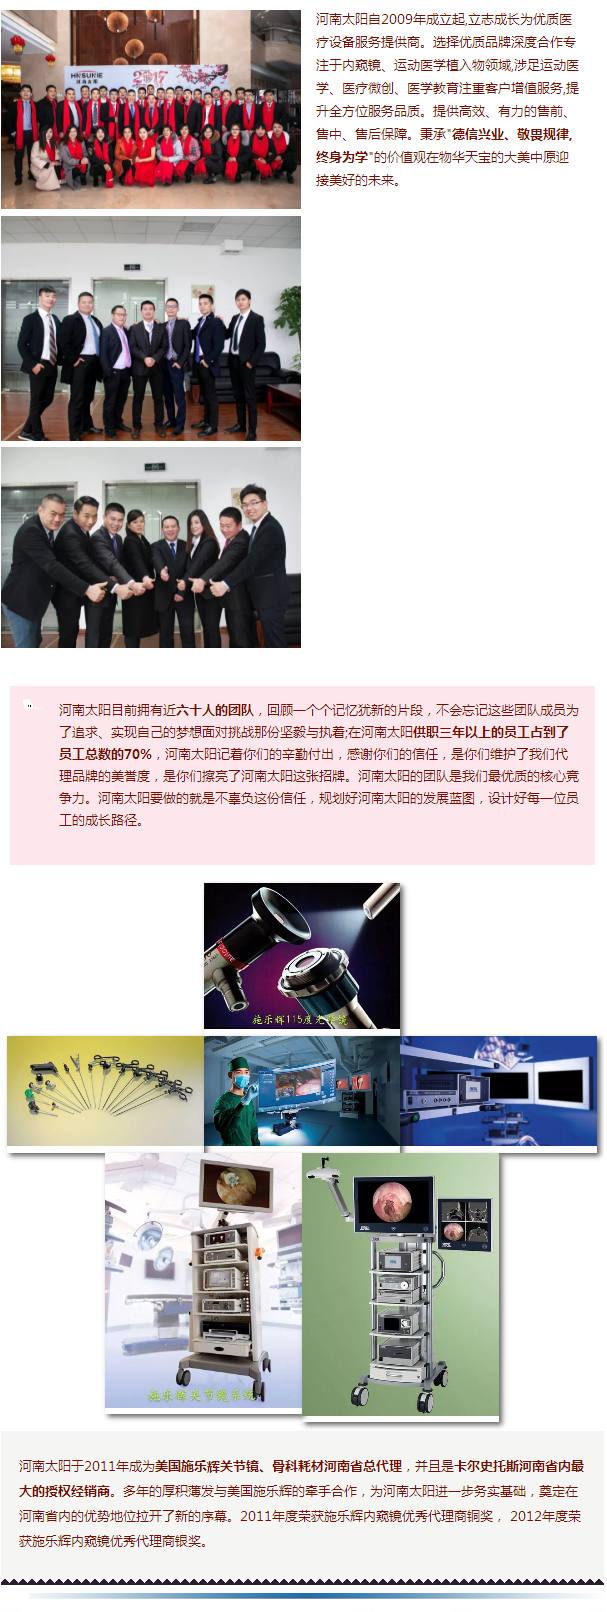 【会员企业】河南太阳电子科技有限公司11